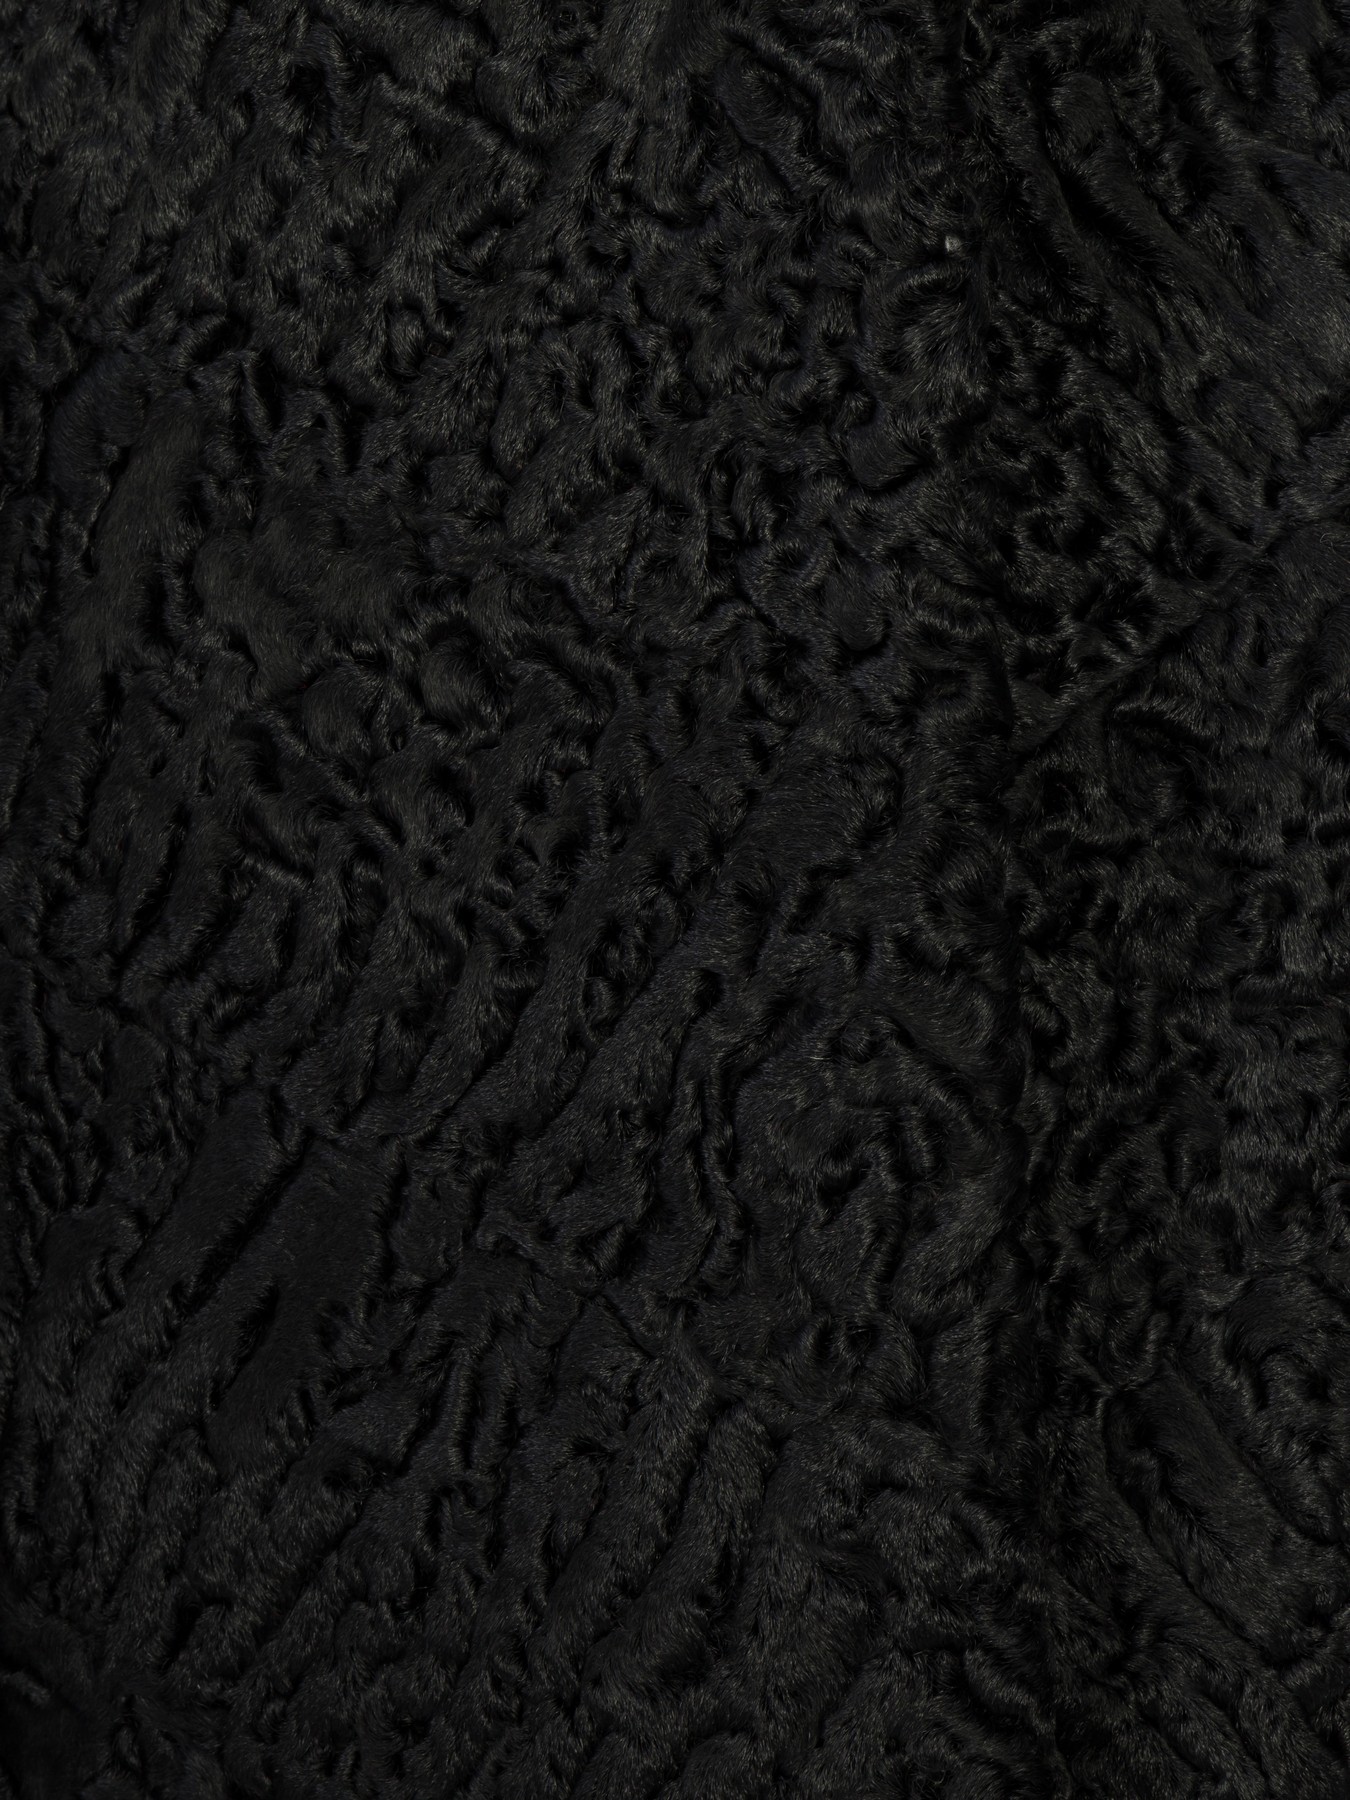 Шуба из каракуля, цвет черный, диагональная раскладка меха